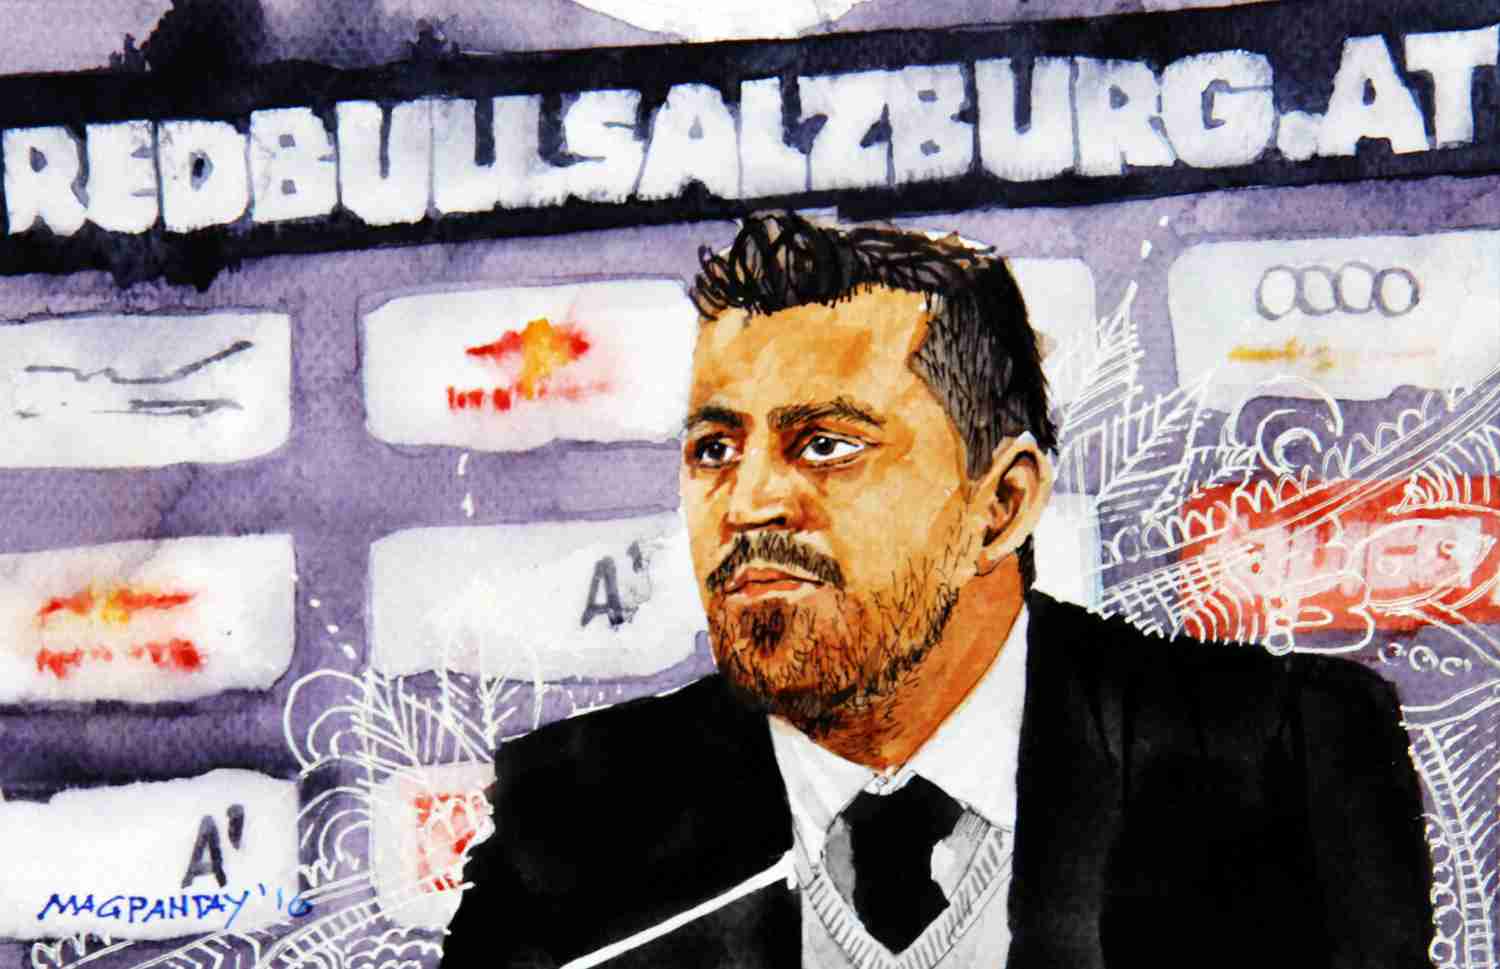 _Oscar Garcia 2 - Red Bull Salzburg